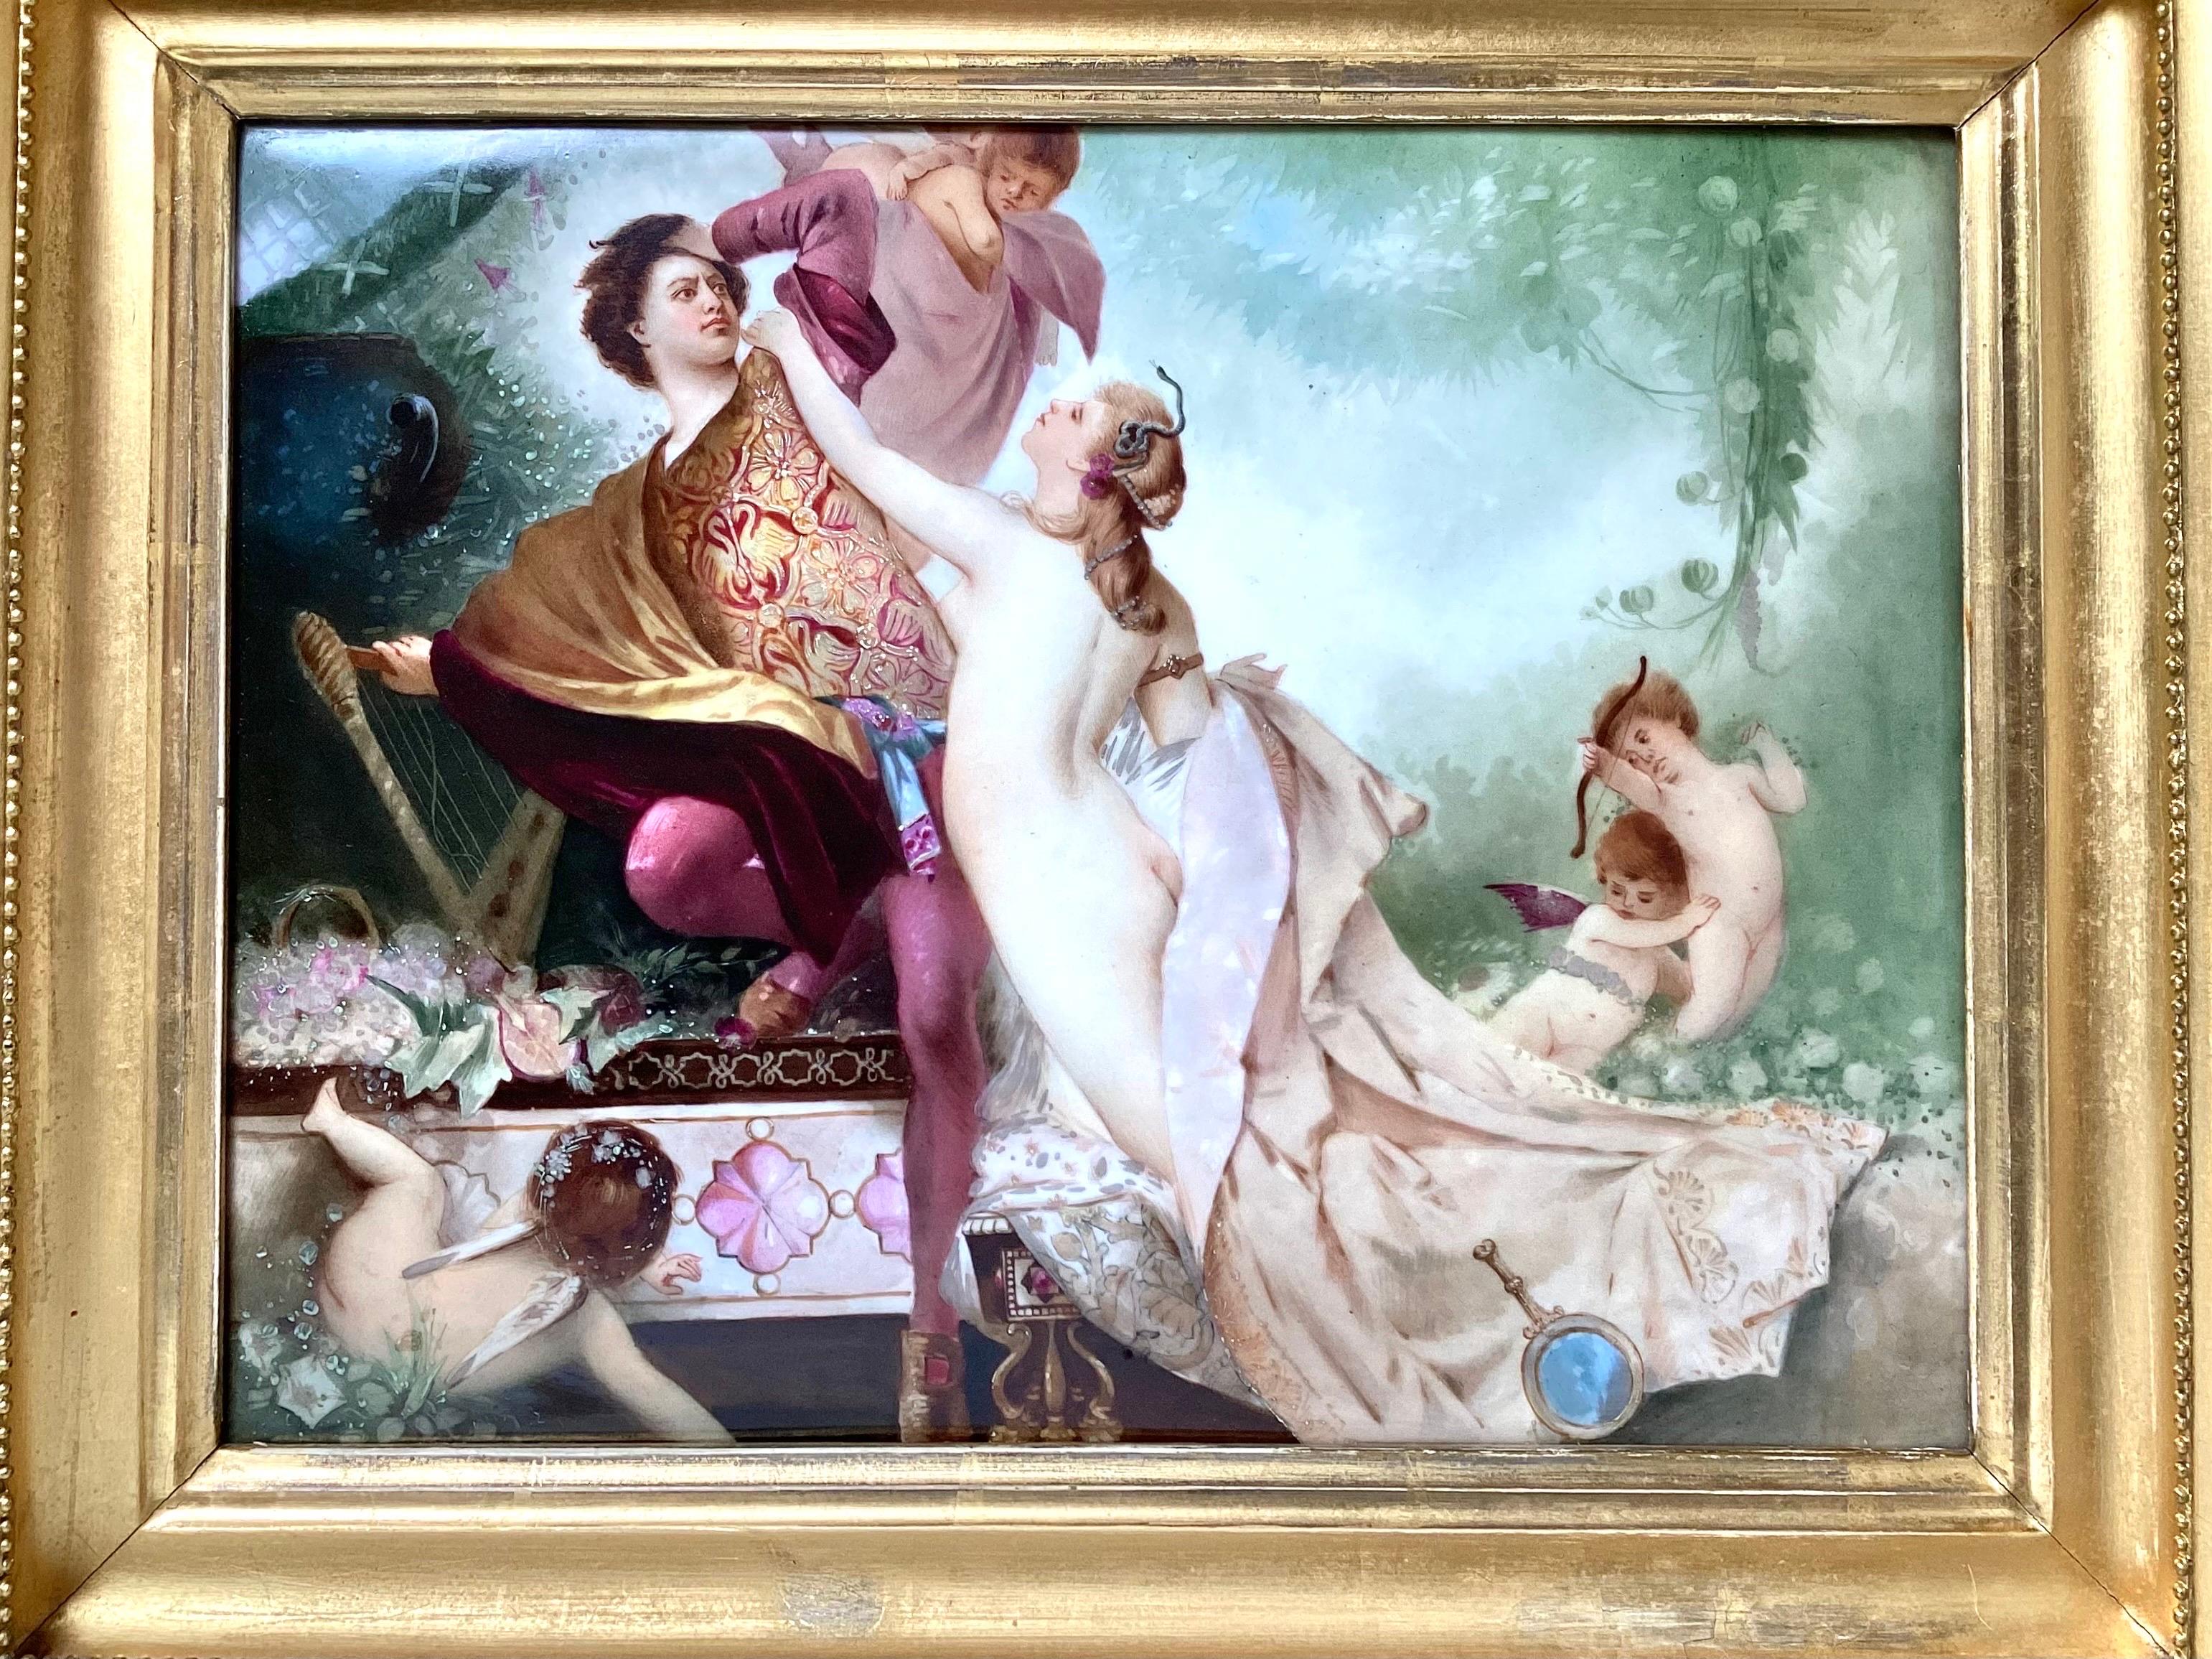 Peinture sur porcelaine d'un noble et d'une femme nue avec des cupidons, peinte de manière élaborée et très détaillée. Cadre d'origine en bois doré avec cadre extérieur réticulé. La qualité de la peinture est excellente avec les initiales de